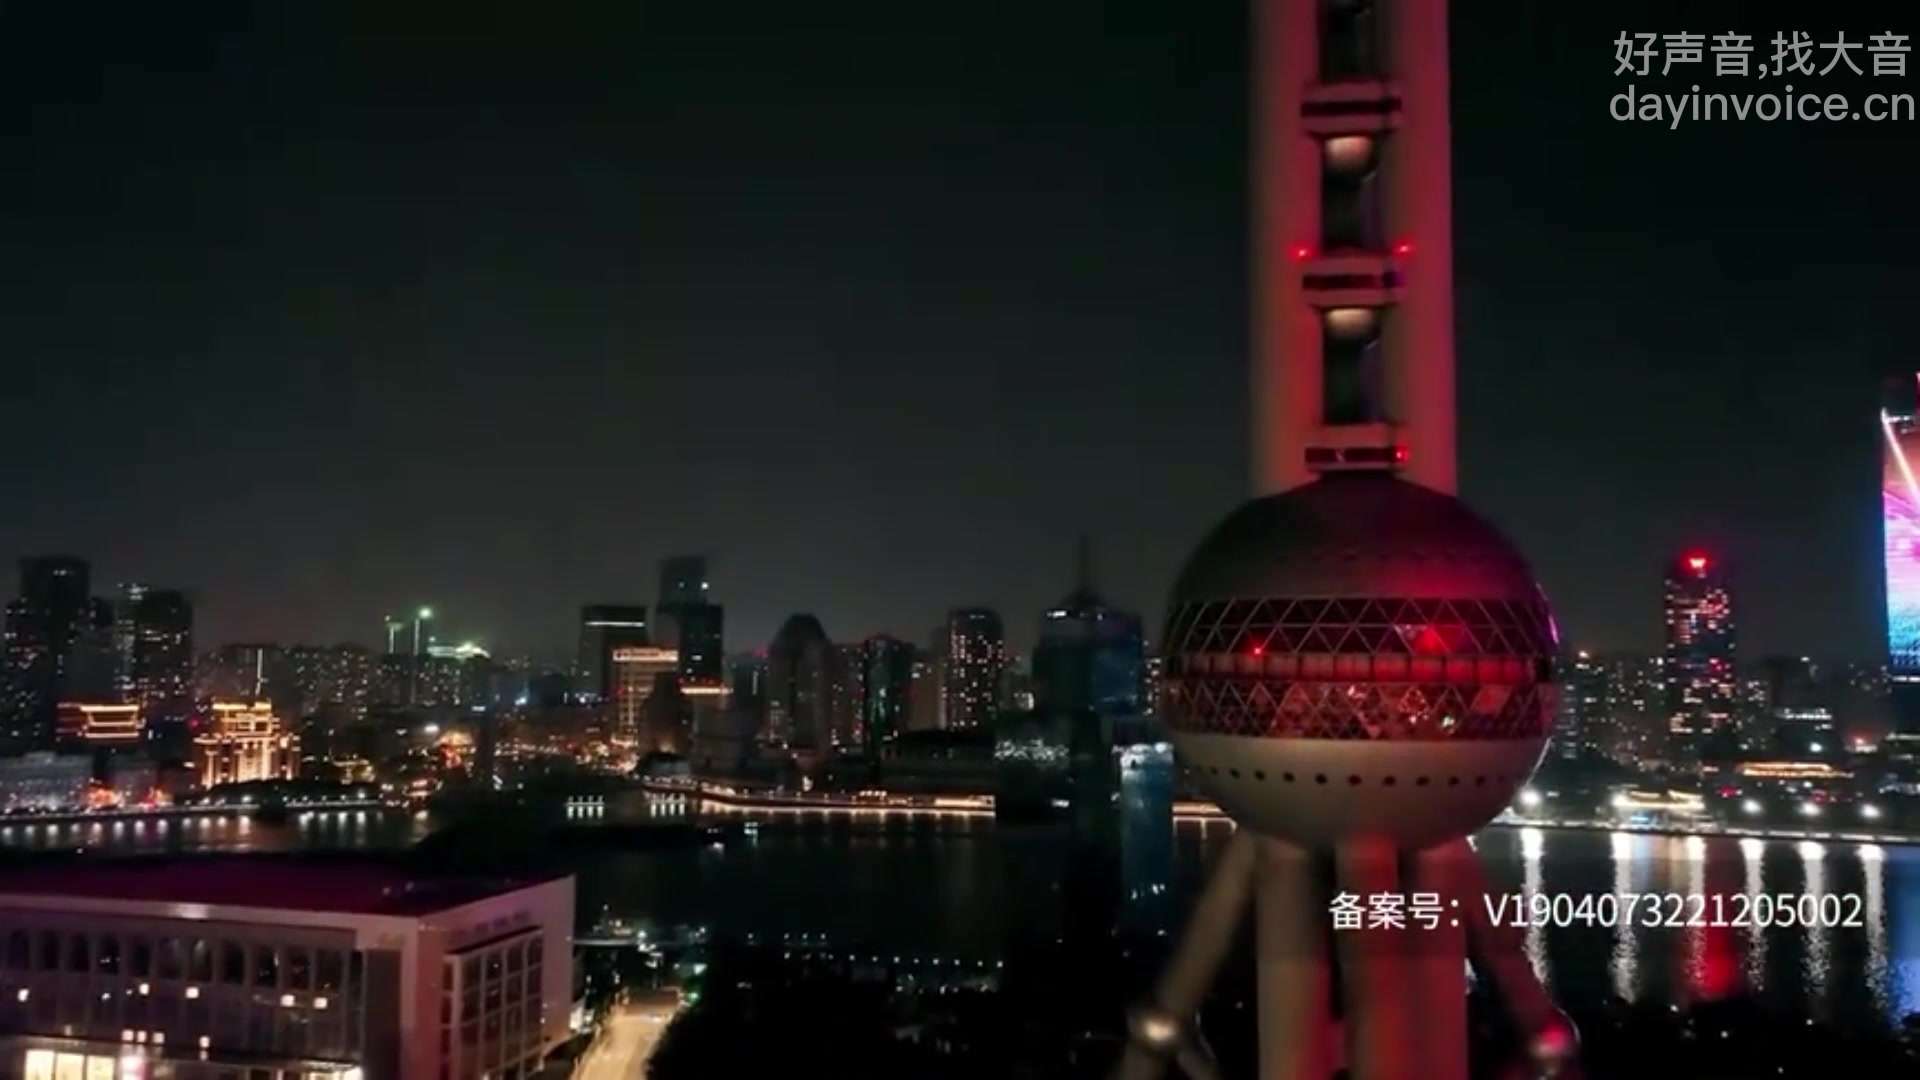 亲切温暖纪录片。上海的夜行者们使命必达，默默付出 寒来暑往，年复一年。大音355